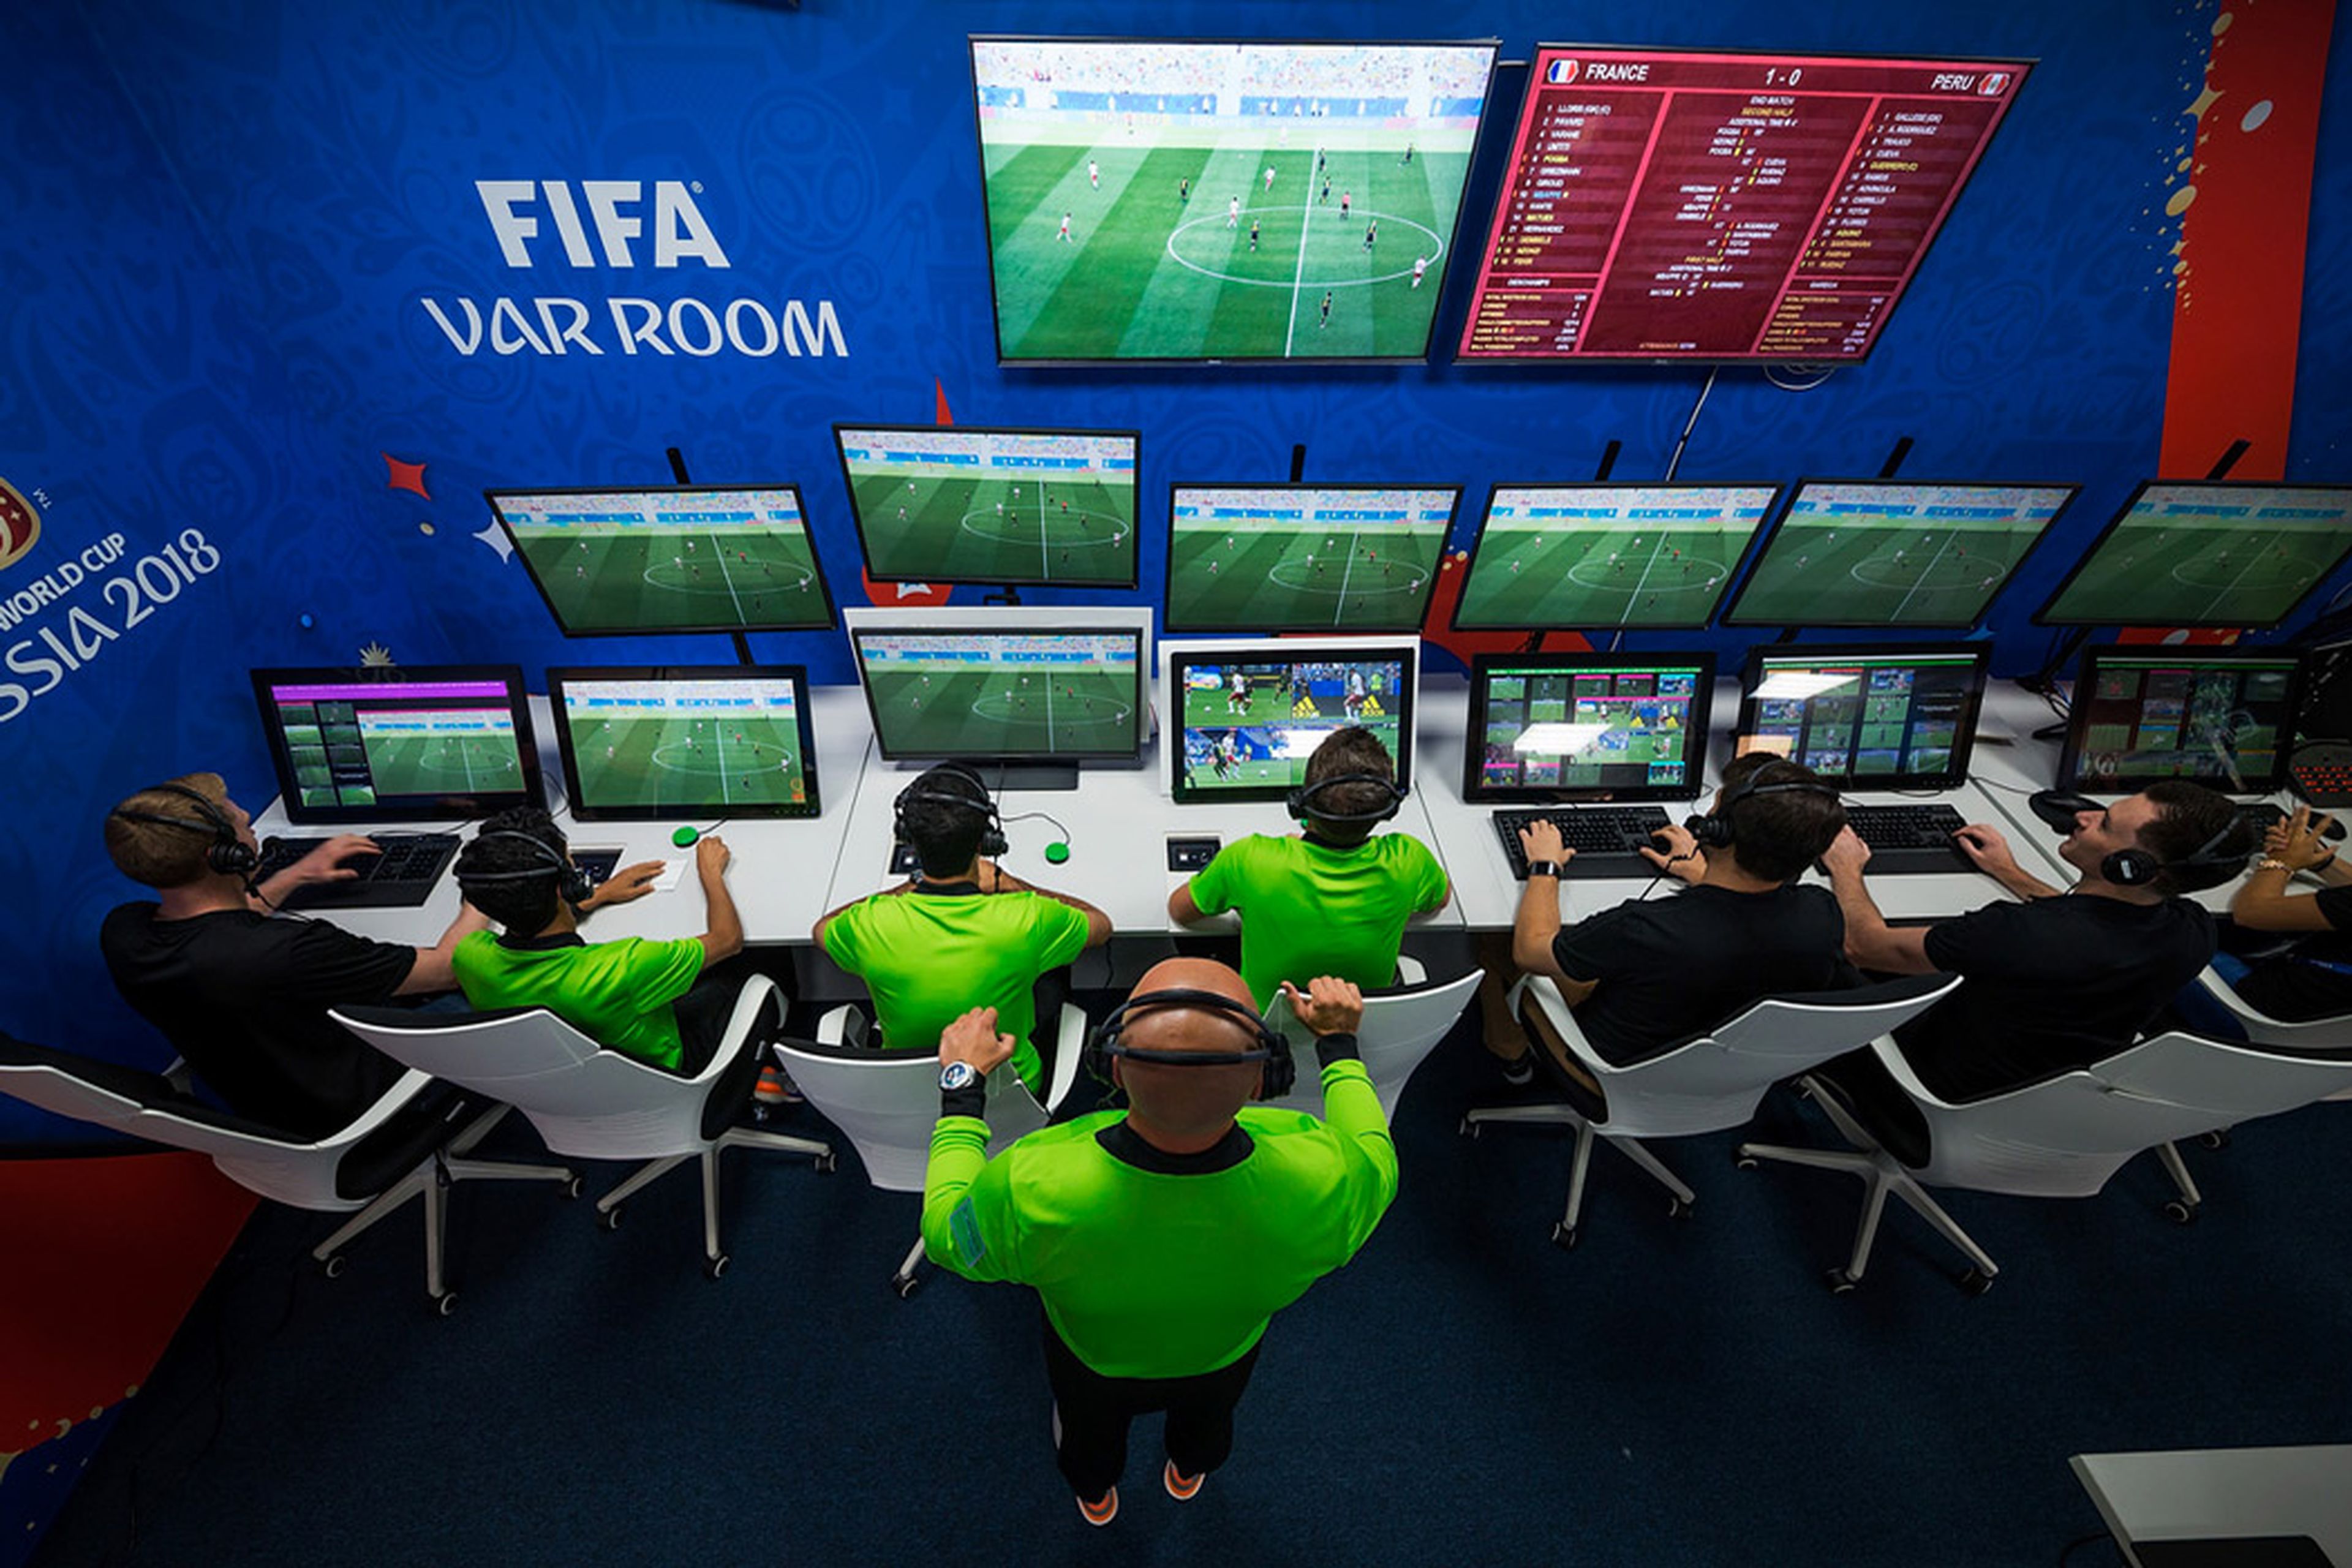 FIFA Var Room